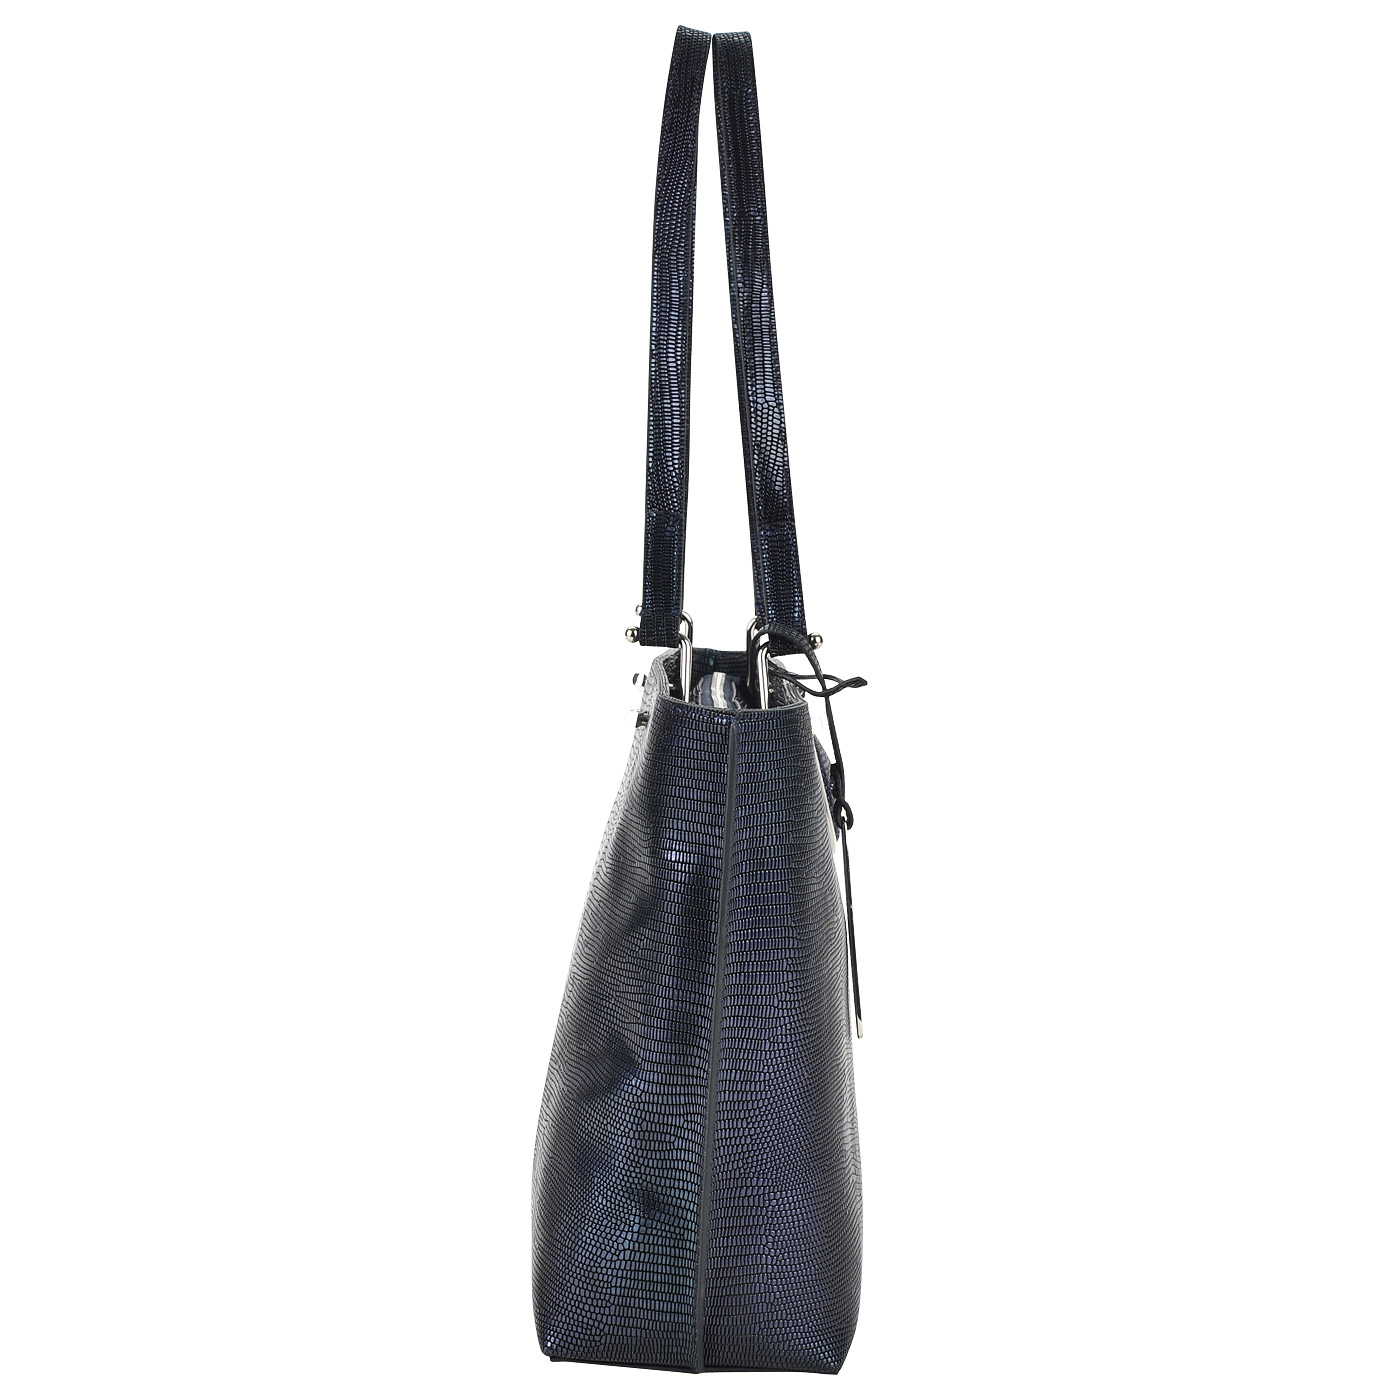 Вместительная кожаная сумка с выделкой под рептилию Cromia Nocturne